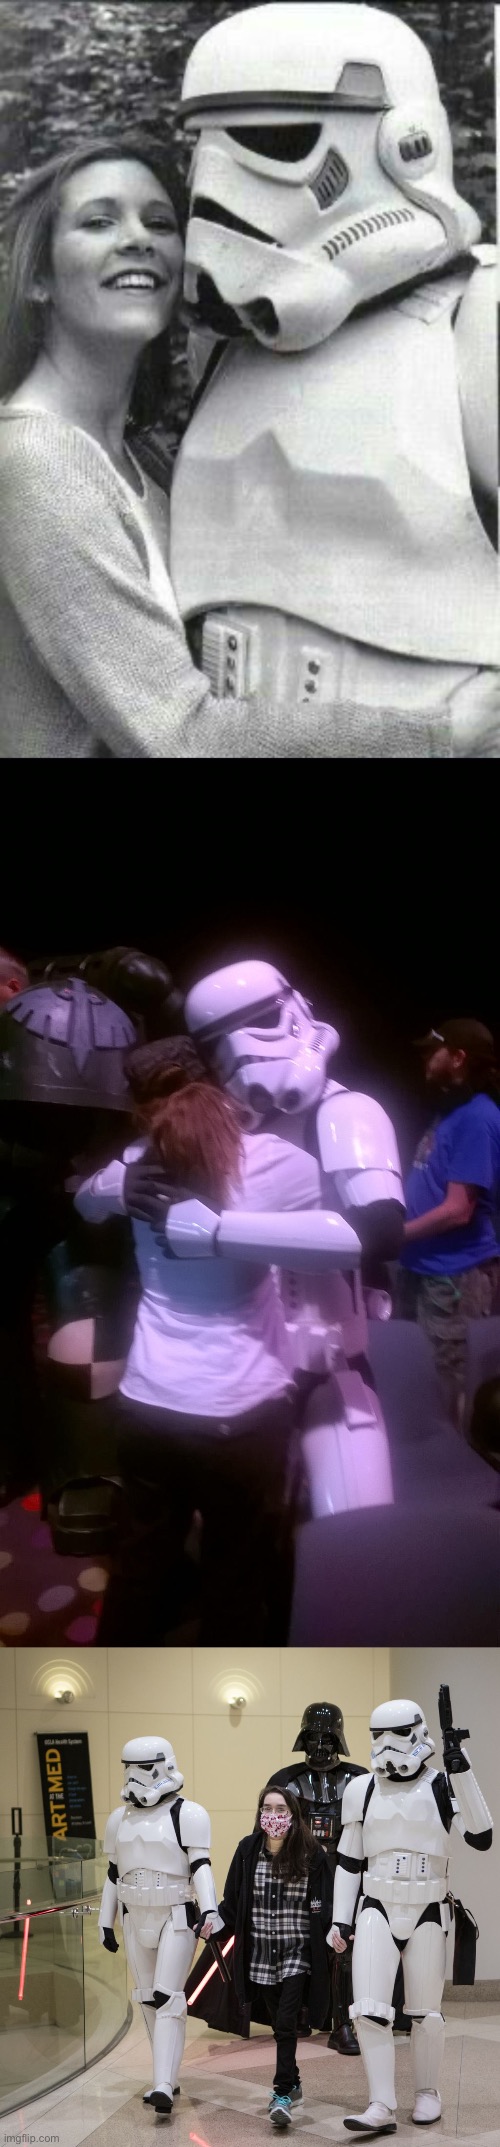 Stormtroopers need hugs too | image tagged in hugs,hug,stormtrooper | made w/ Imgflip meme maker